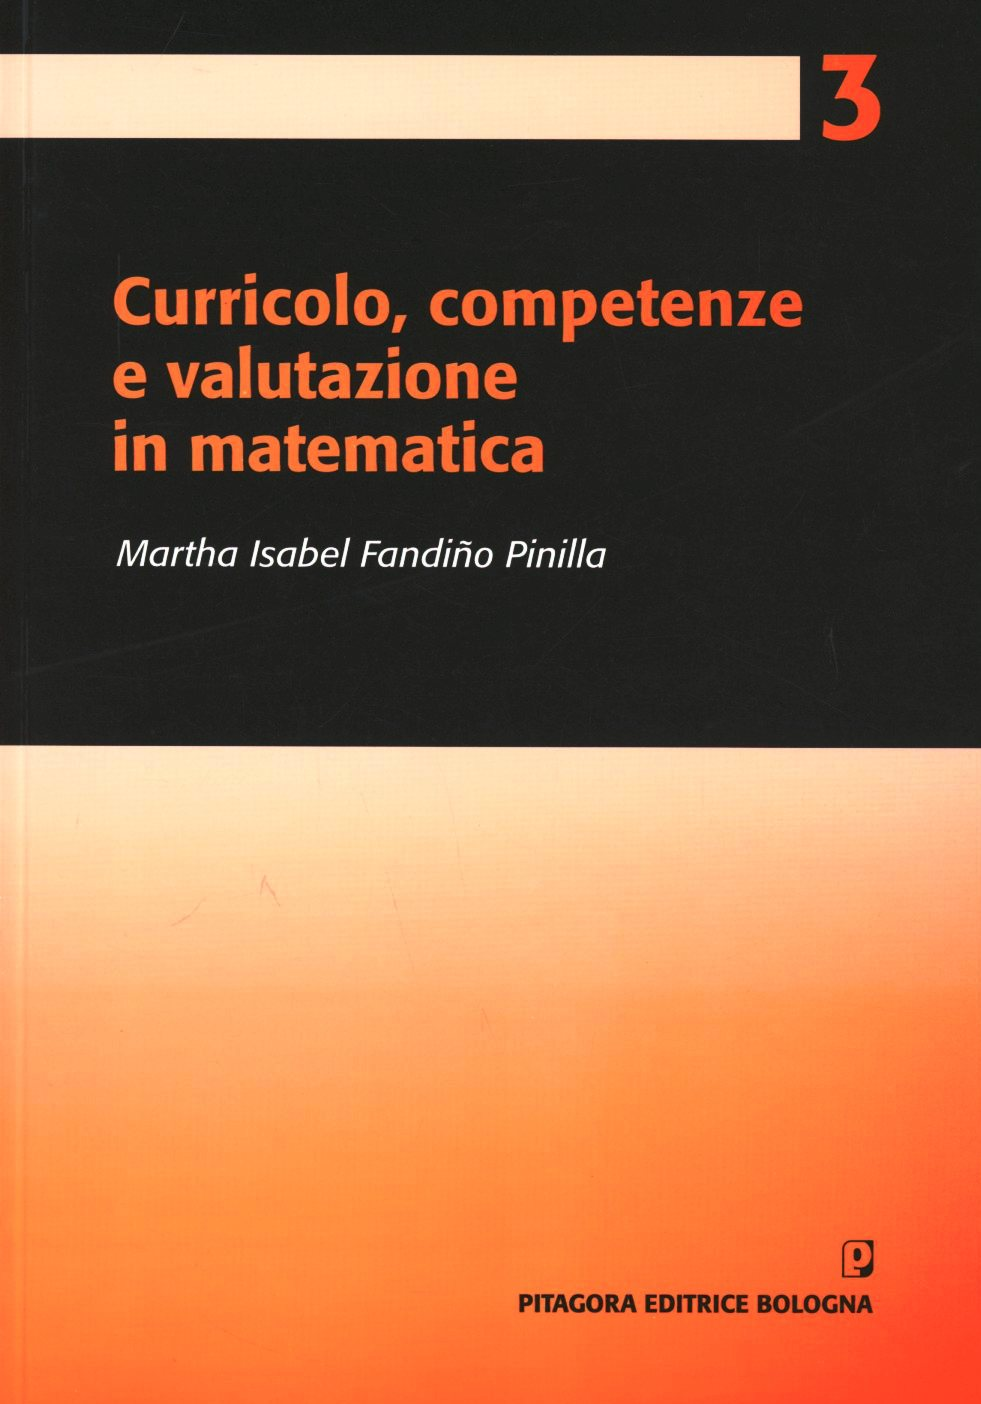 Image of Curricolo, competenze e valutazione in matematica